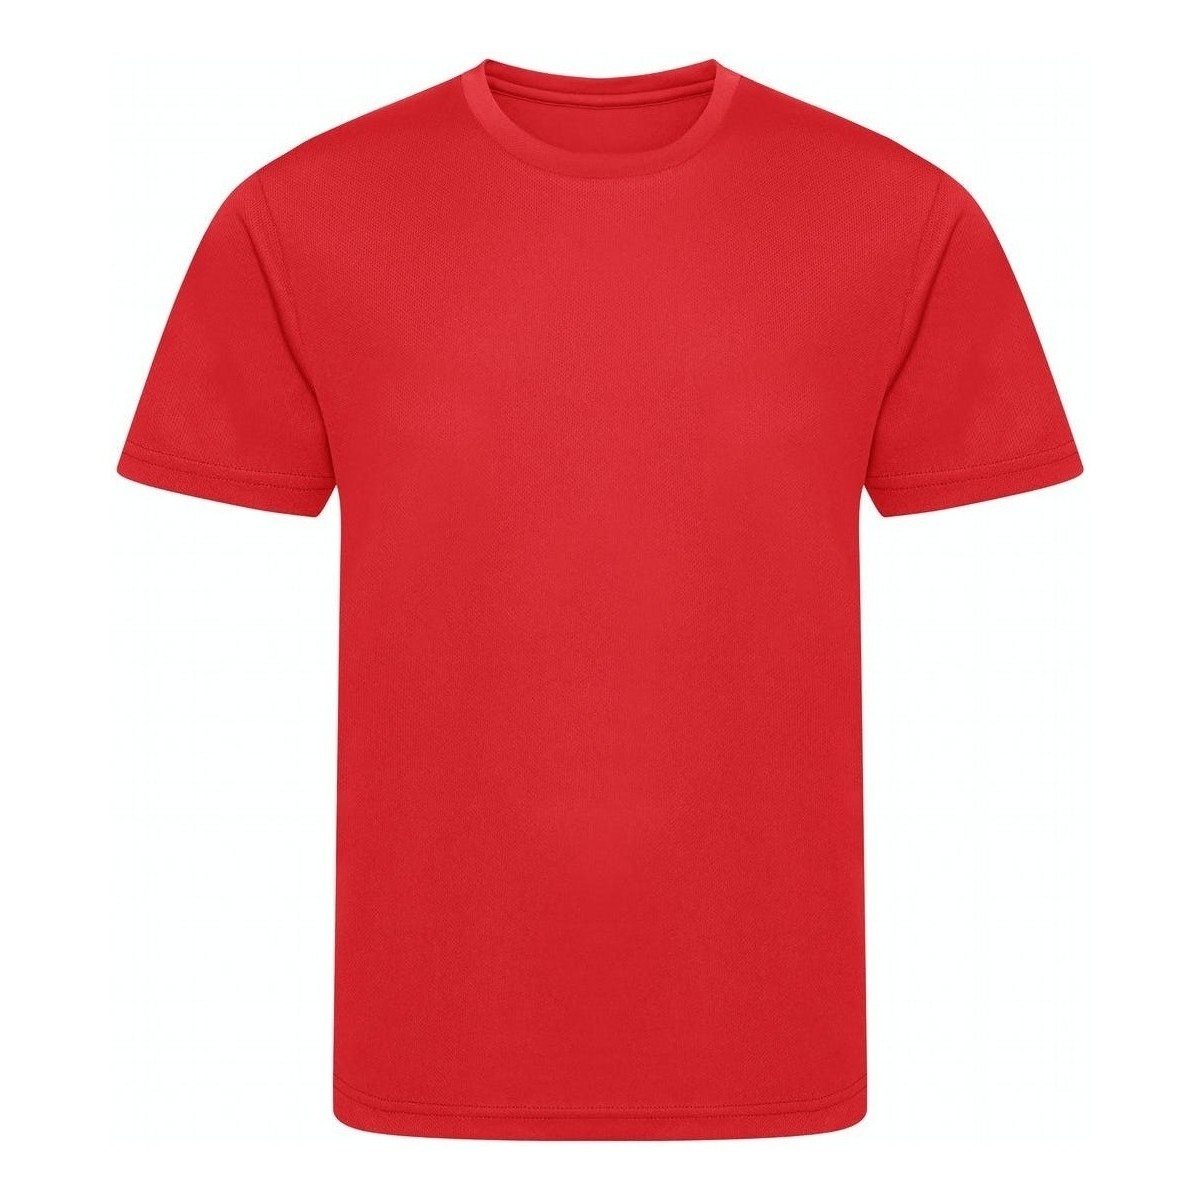 Vêtements Enfant T-shirts manches longues Awdis Cool JJ201 Rouge